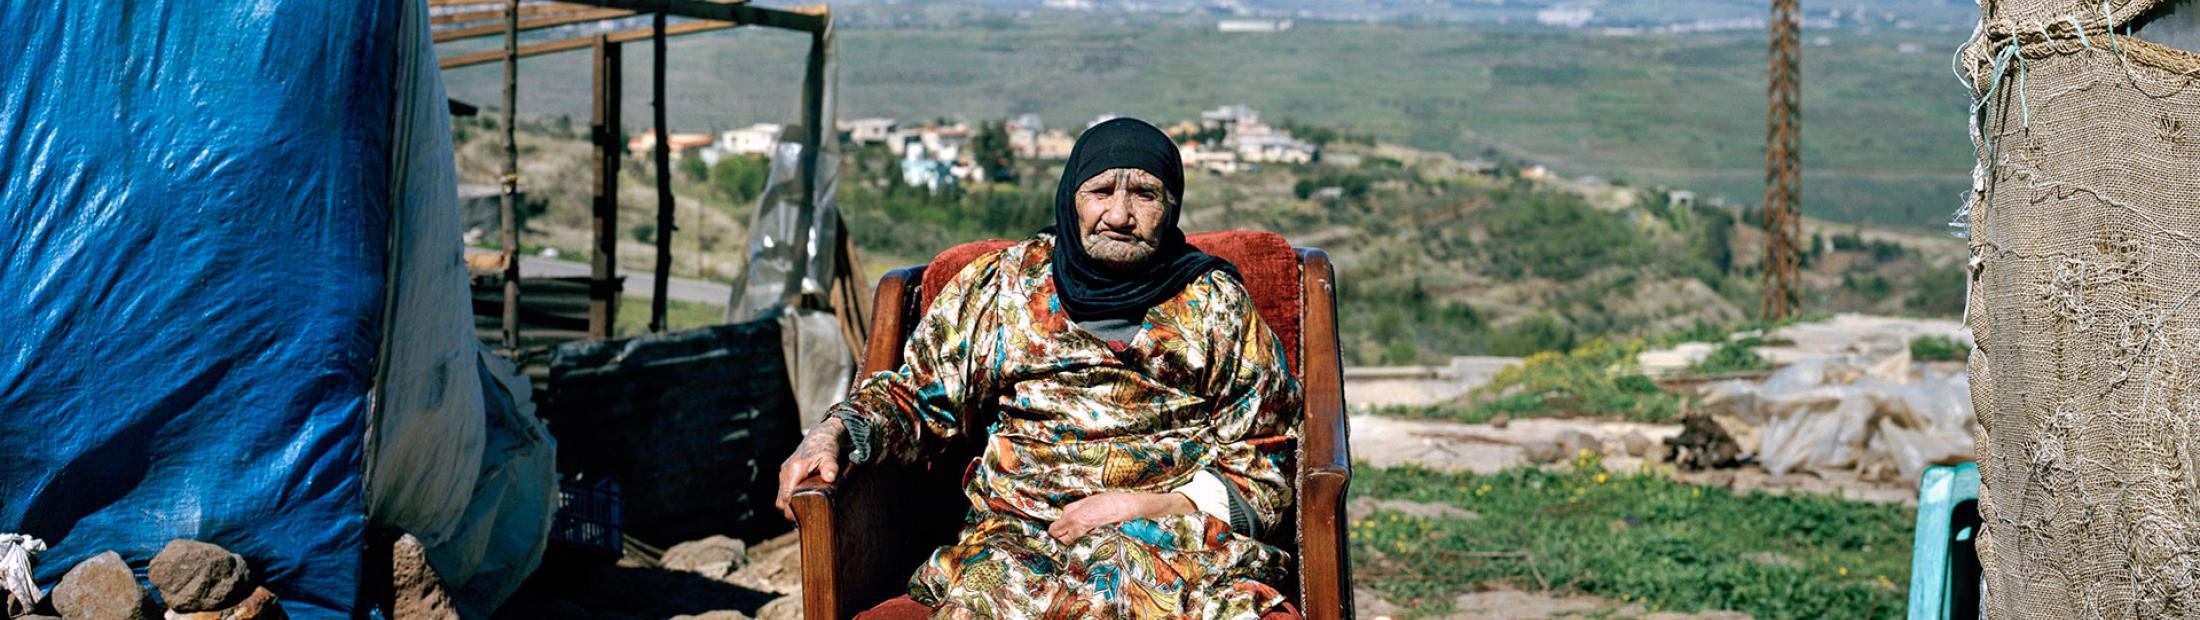 Los refugiados sirios más ancianos